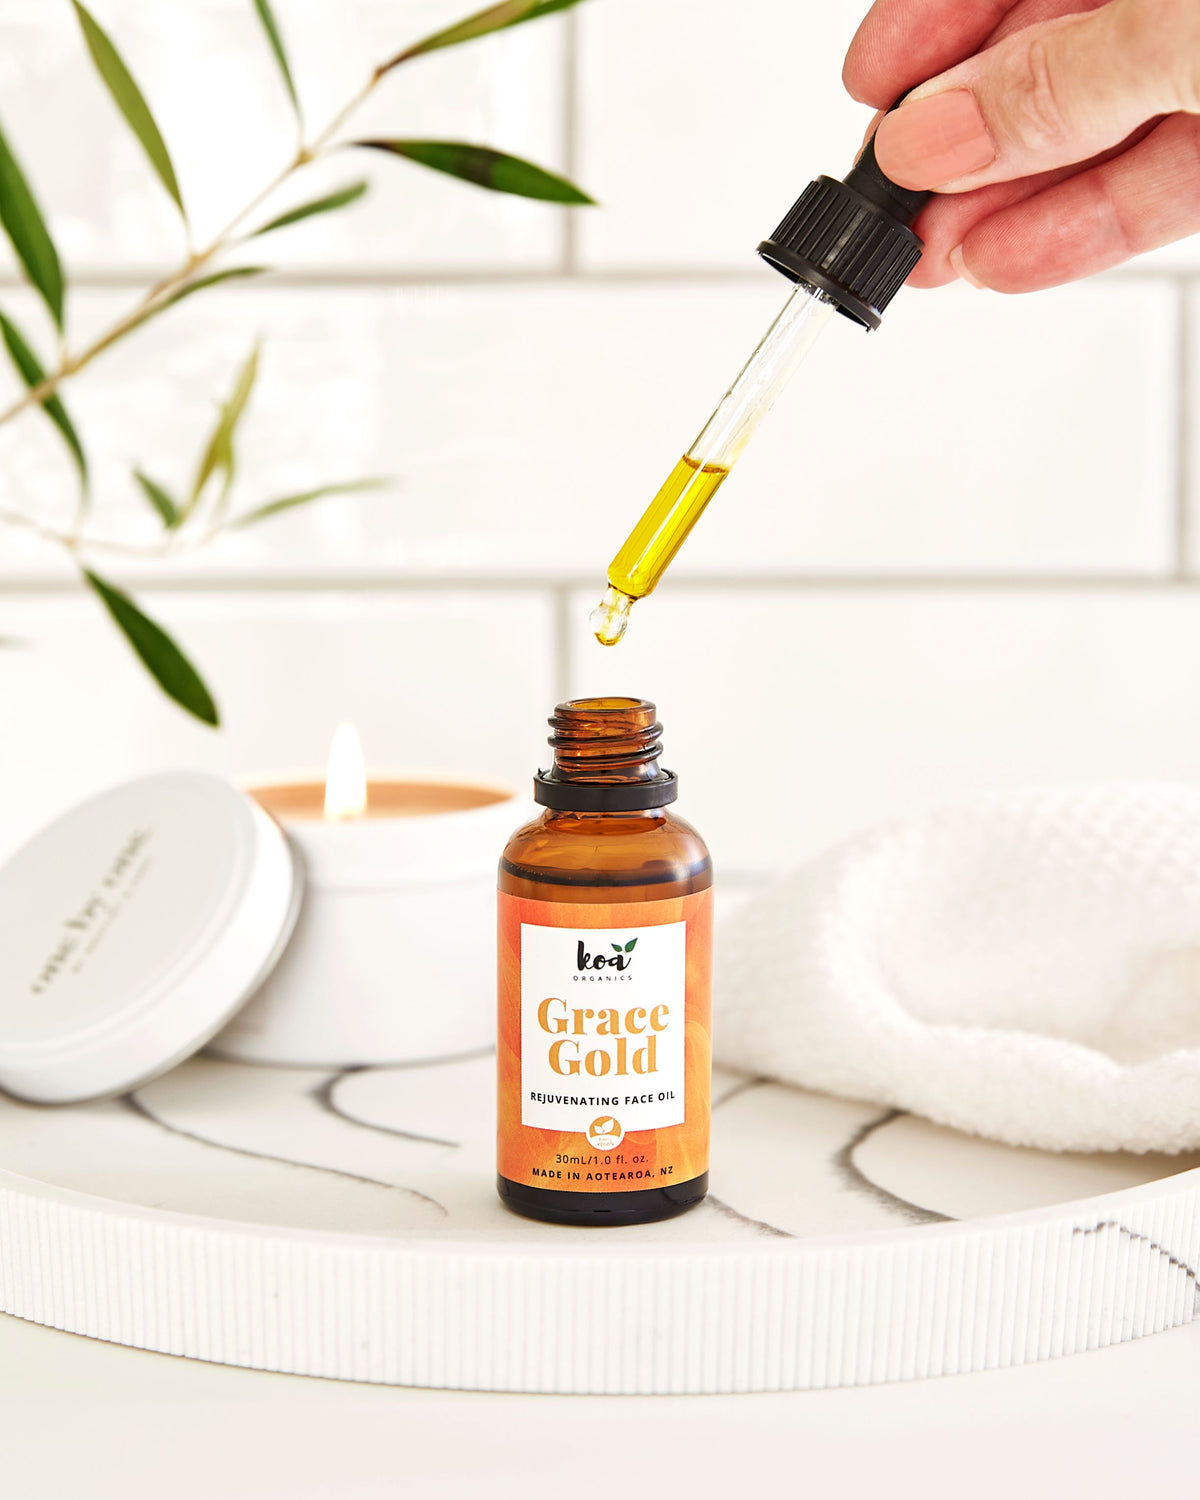 Grace Gold rejuvenating Face Oil from Koa Organics